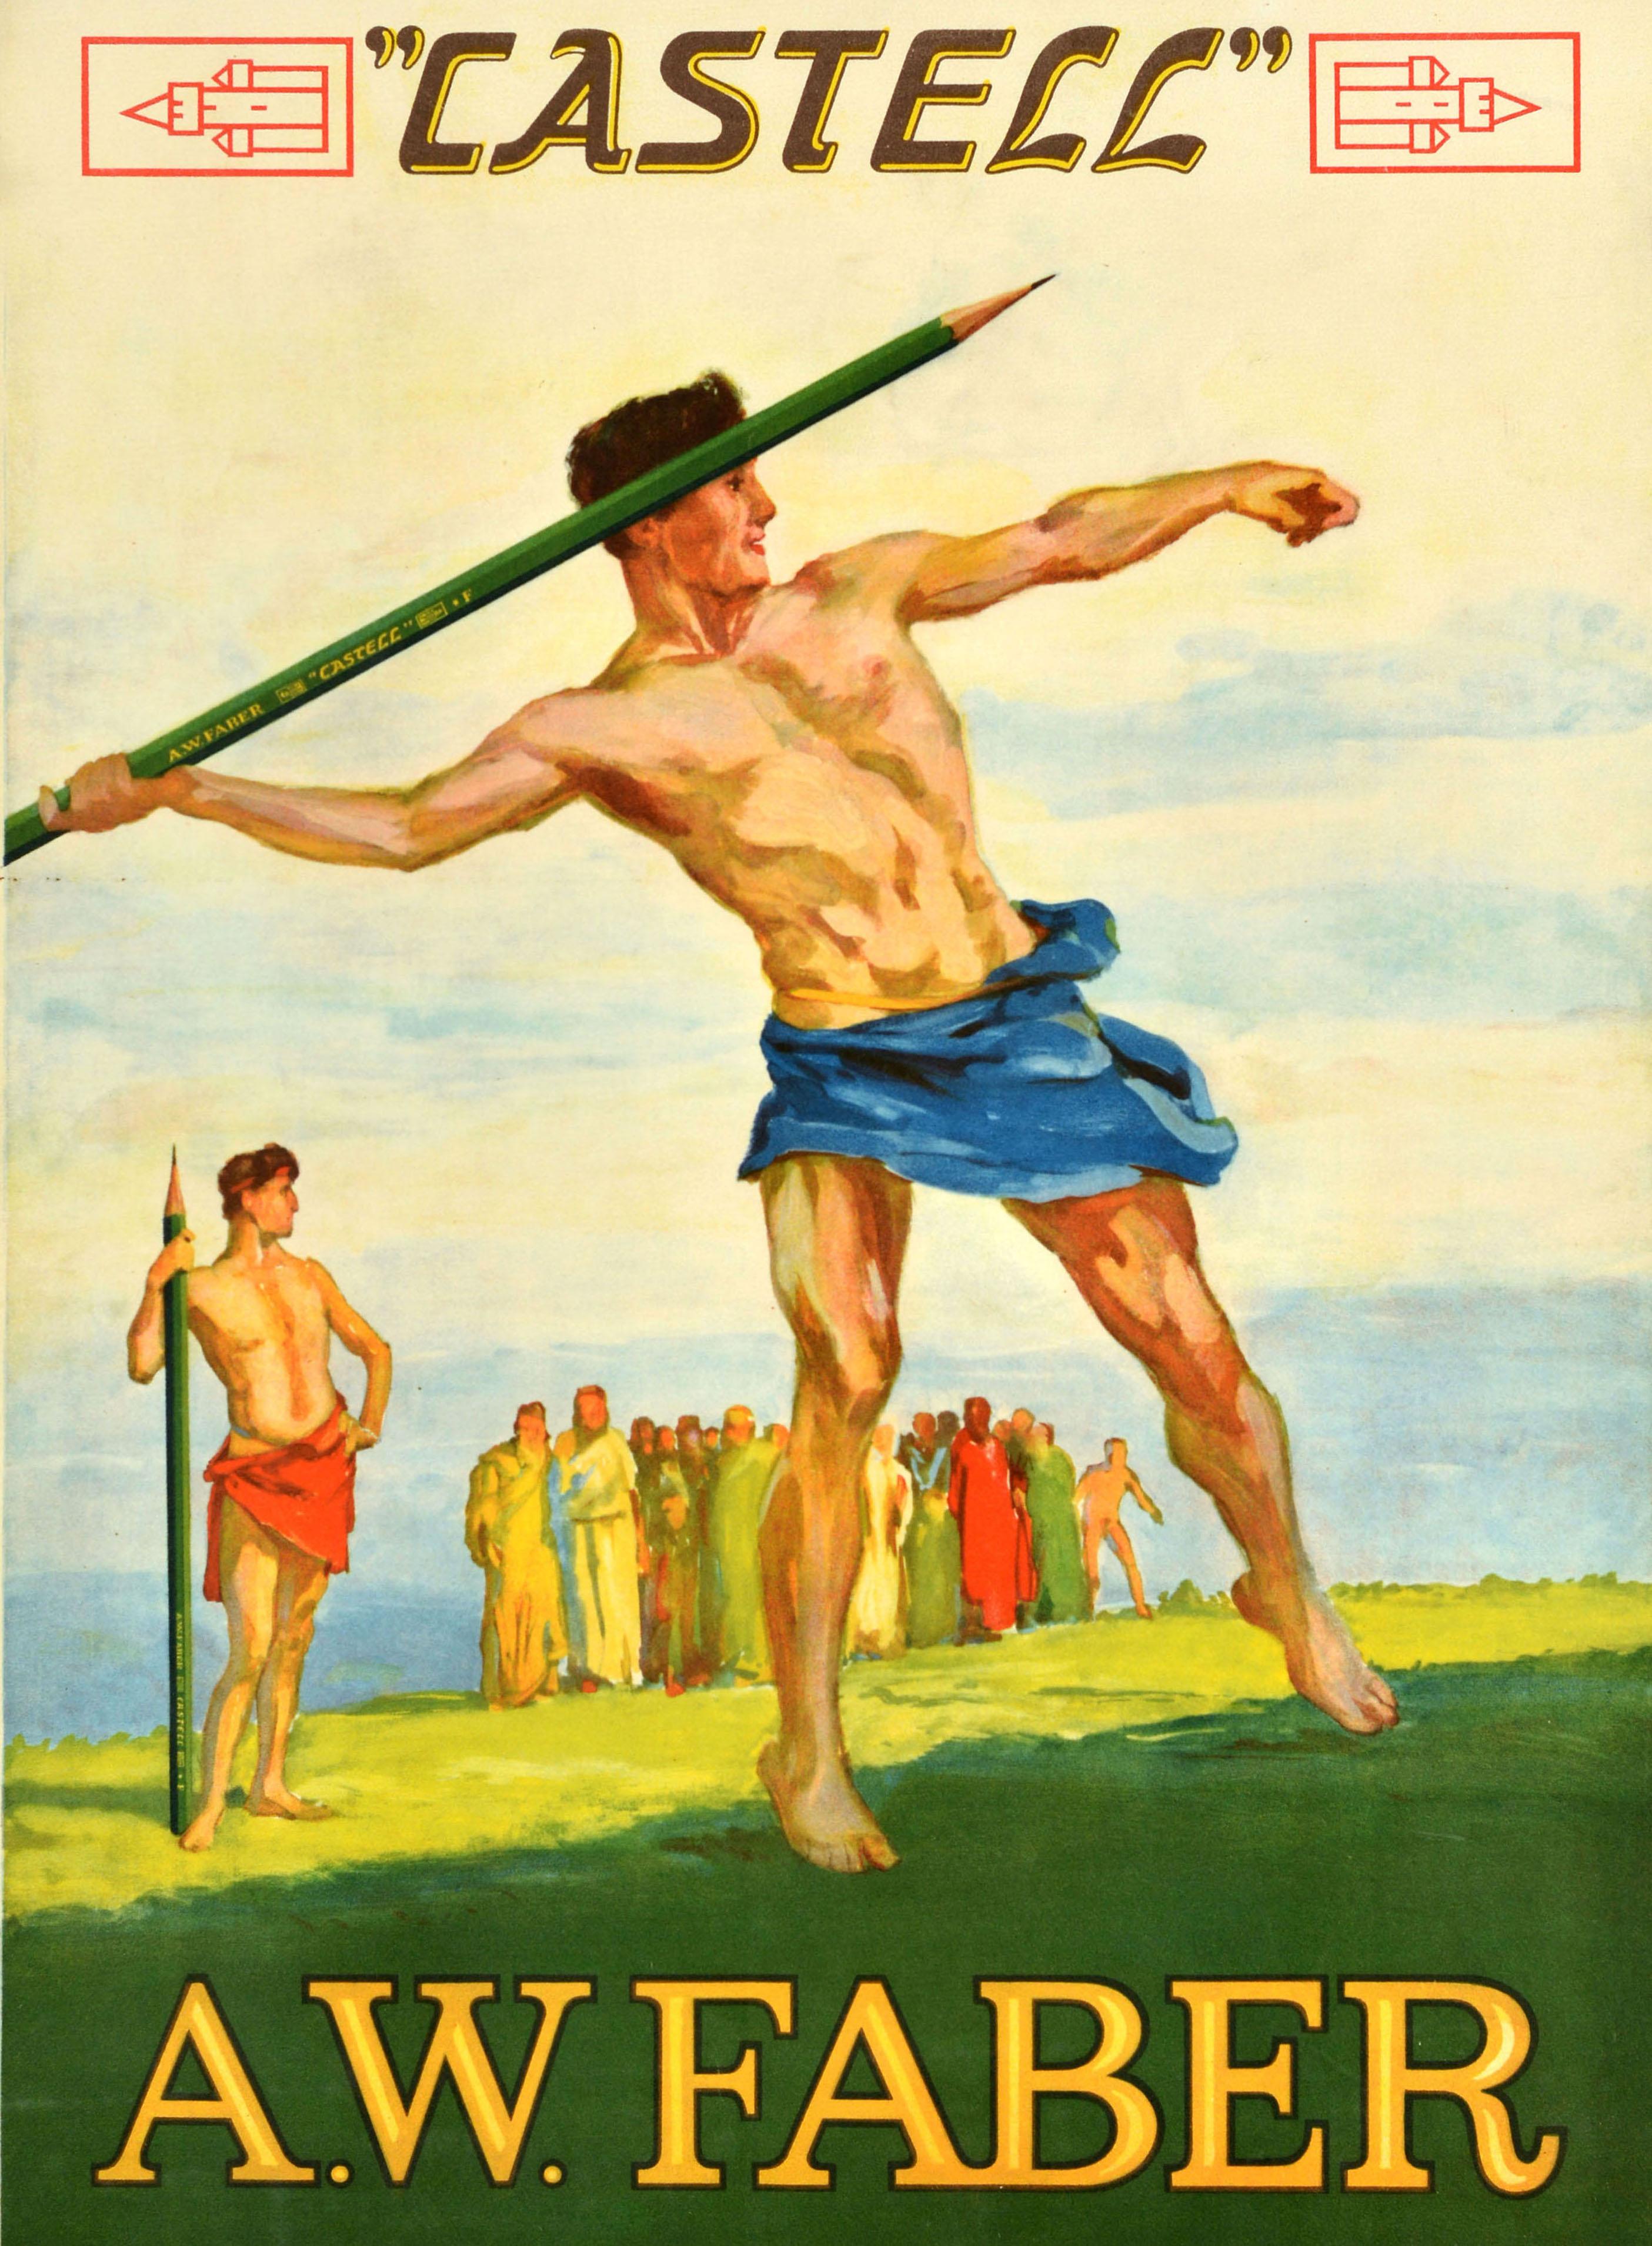 Originales antikes Werbeplakat für Castell A.W. Faber-Briefpapier mit einem jungen Athleten, der einen grünen AW Faber-Bleistift als Speer wirft, mit einem anderen Speerwerfer und Zuschauern im Hintergrund, alle in antiker Toga-Kleidung gekleidet,